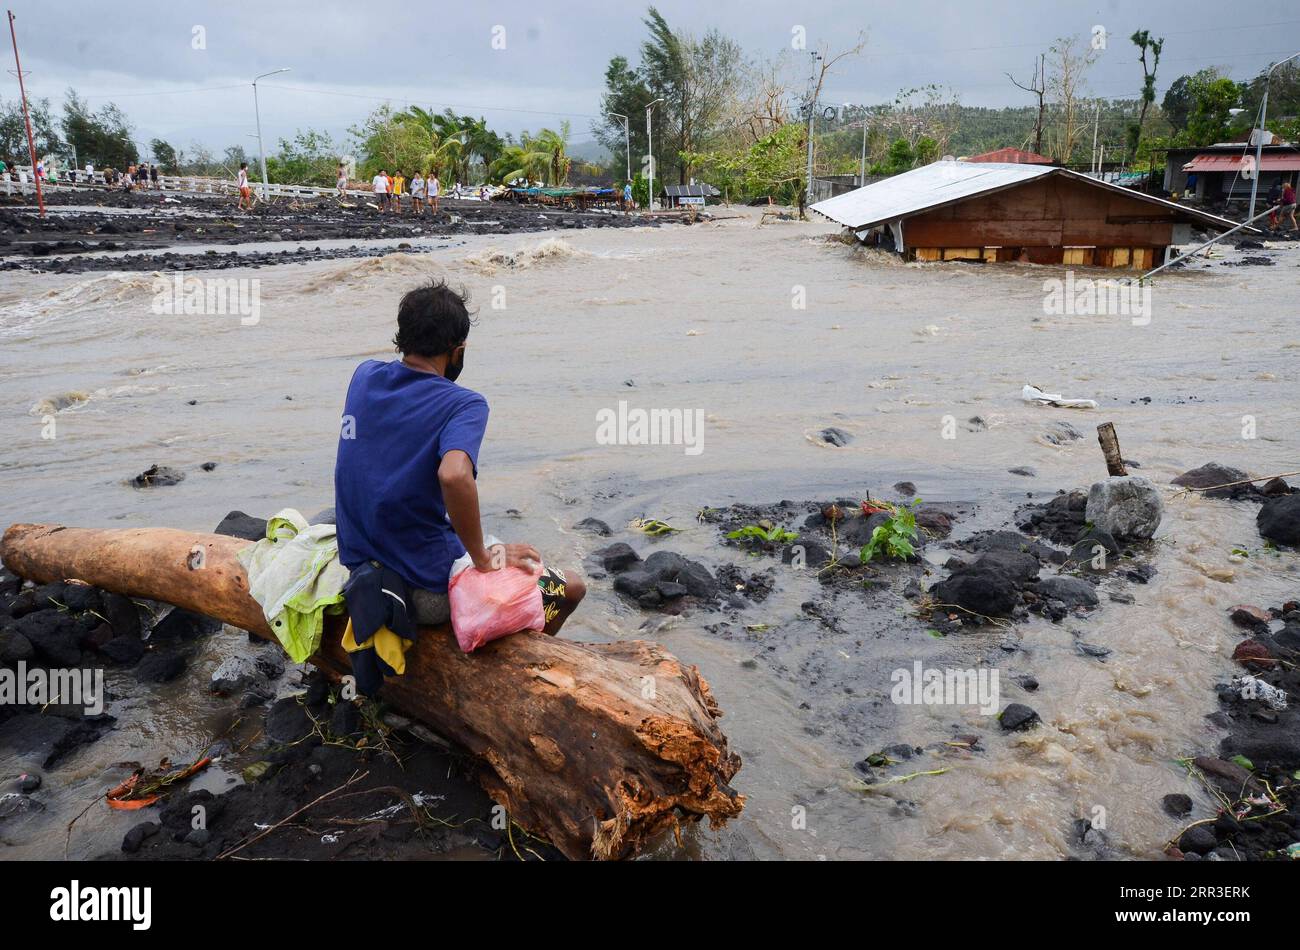 201101 -- PROVINCE D'ALBAY, 1 novembre 2020 -- Un homme regarde une maison submergée par les eaux de crue provoquées par les fortes pluies du typhon Goni dans la province d'Albay, aux Philippines, le 1 novembre 2020. Le super typhon Goni s'est abattu dimanche sur la partie sud de l'île principale de Luçon aux Philippines avec des vents violents catastrophiques et des pluies torrentielles intenses, déclenchant des inondations soudaines et des coulées de boue qui ont tué au moins quatre personnes. Str/Xinhua PHILIPPINES-SUPER TYPHON GONI-DÉVASTATION STRINGER PUBLICATIONxNOTxINxCHN Banque D'Images